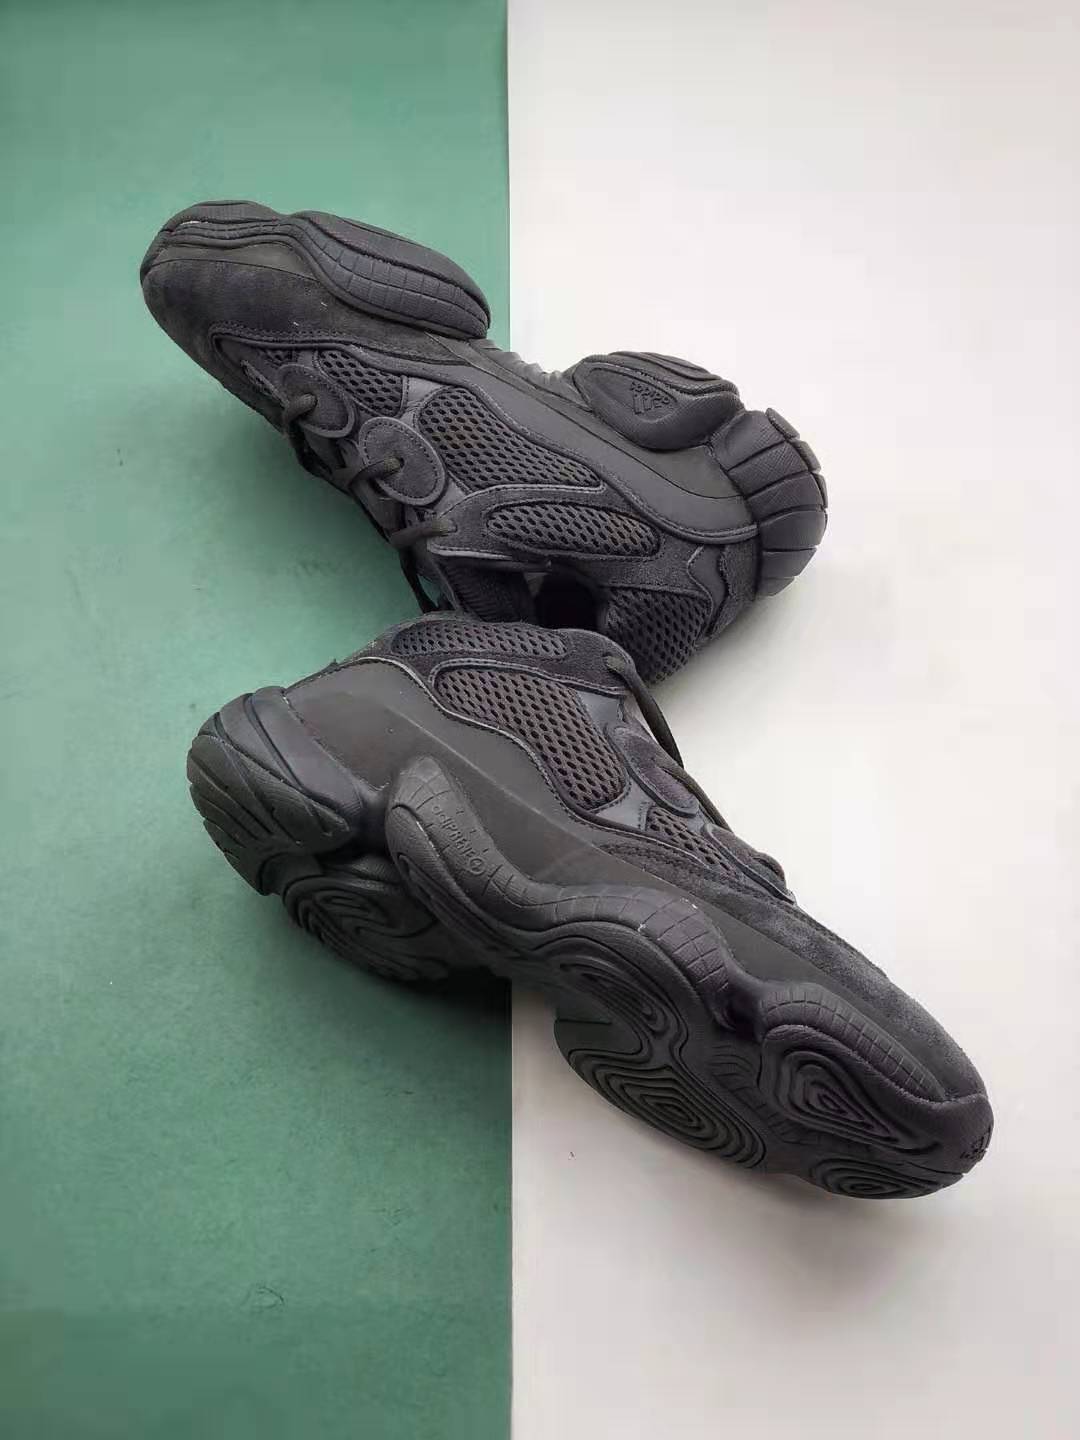 Adidas Yeezy 500 Utility Black F36640 - Limited Edition Footwear